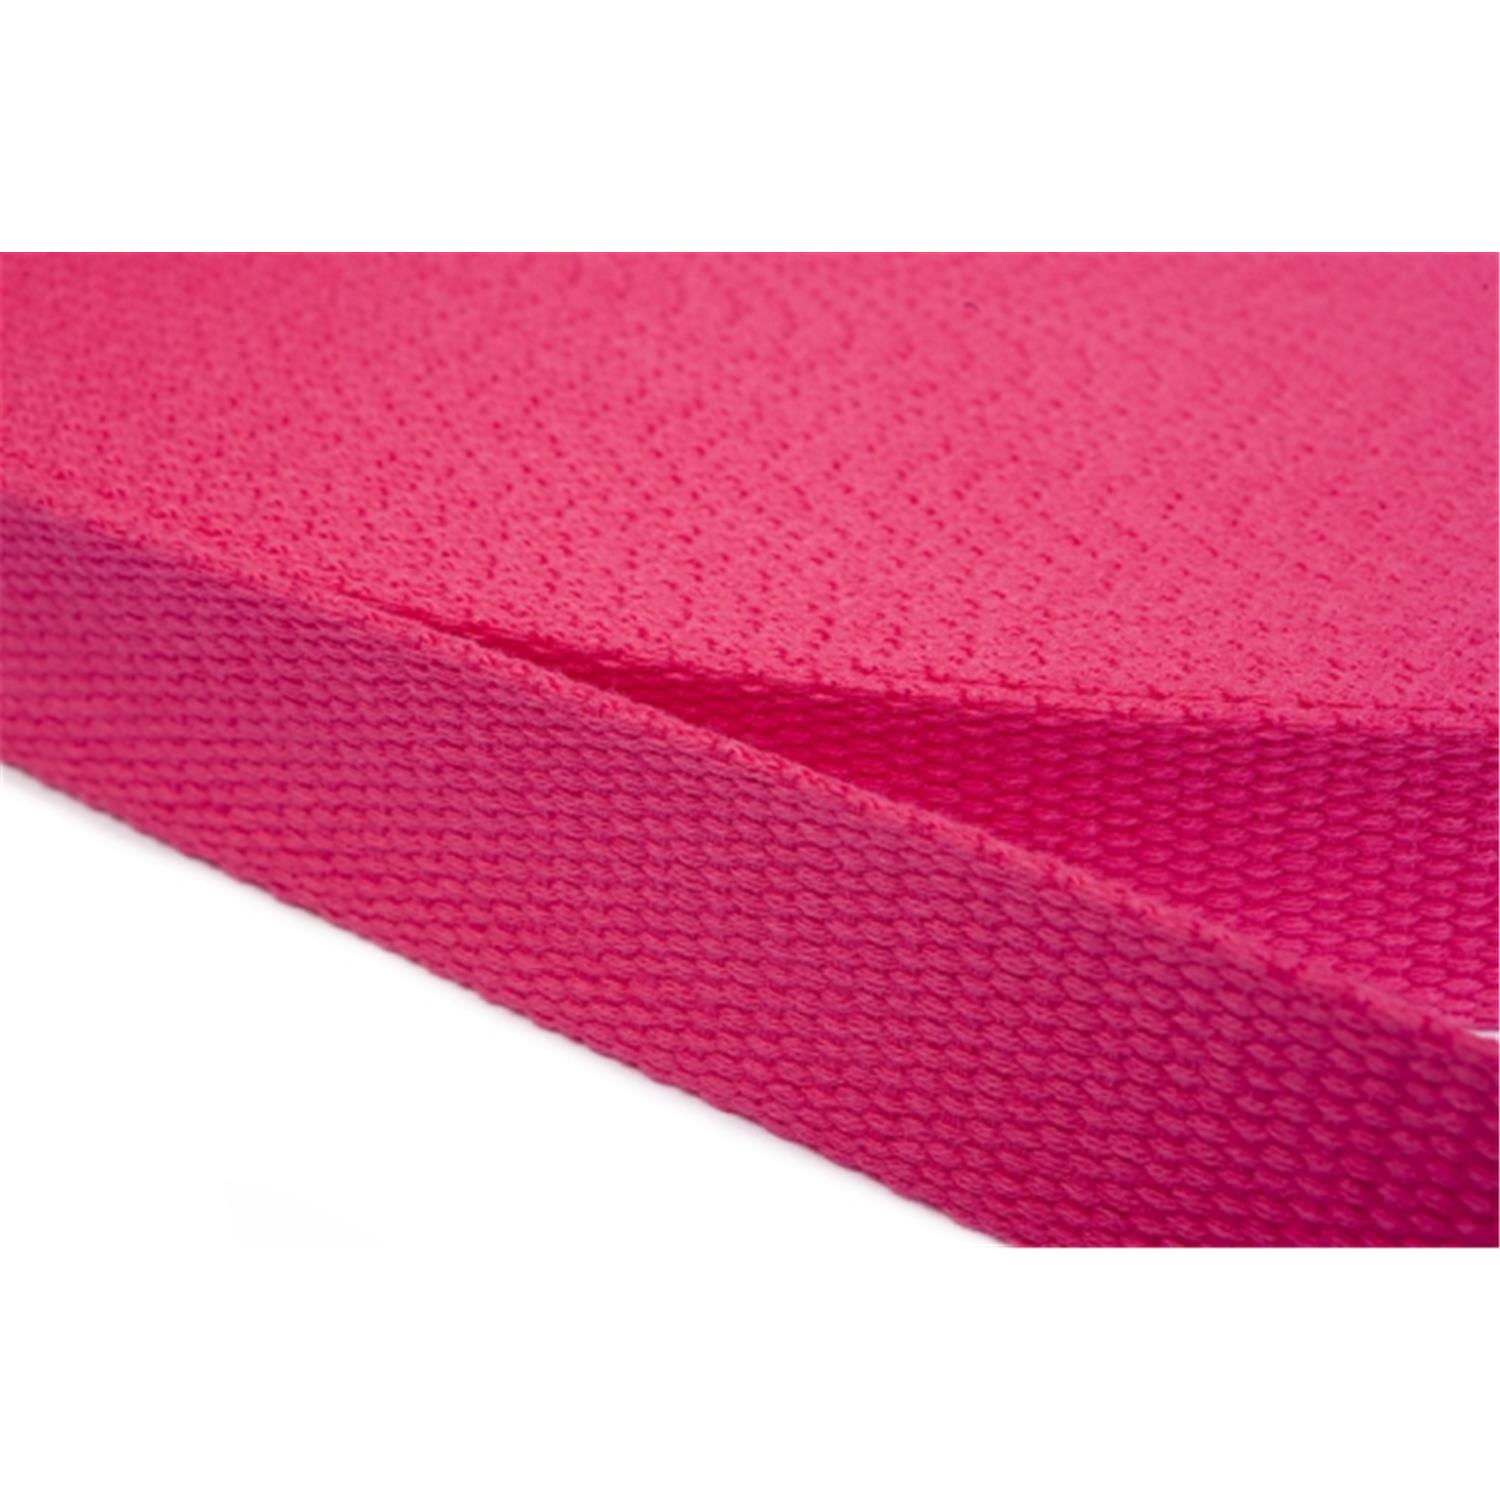 Gurtband aus Baumwolle 40mm in 20 Farben 07 - rosa/pink 12 Meter